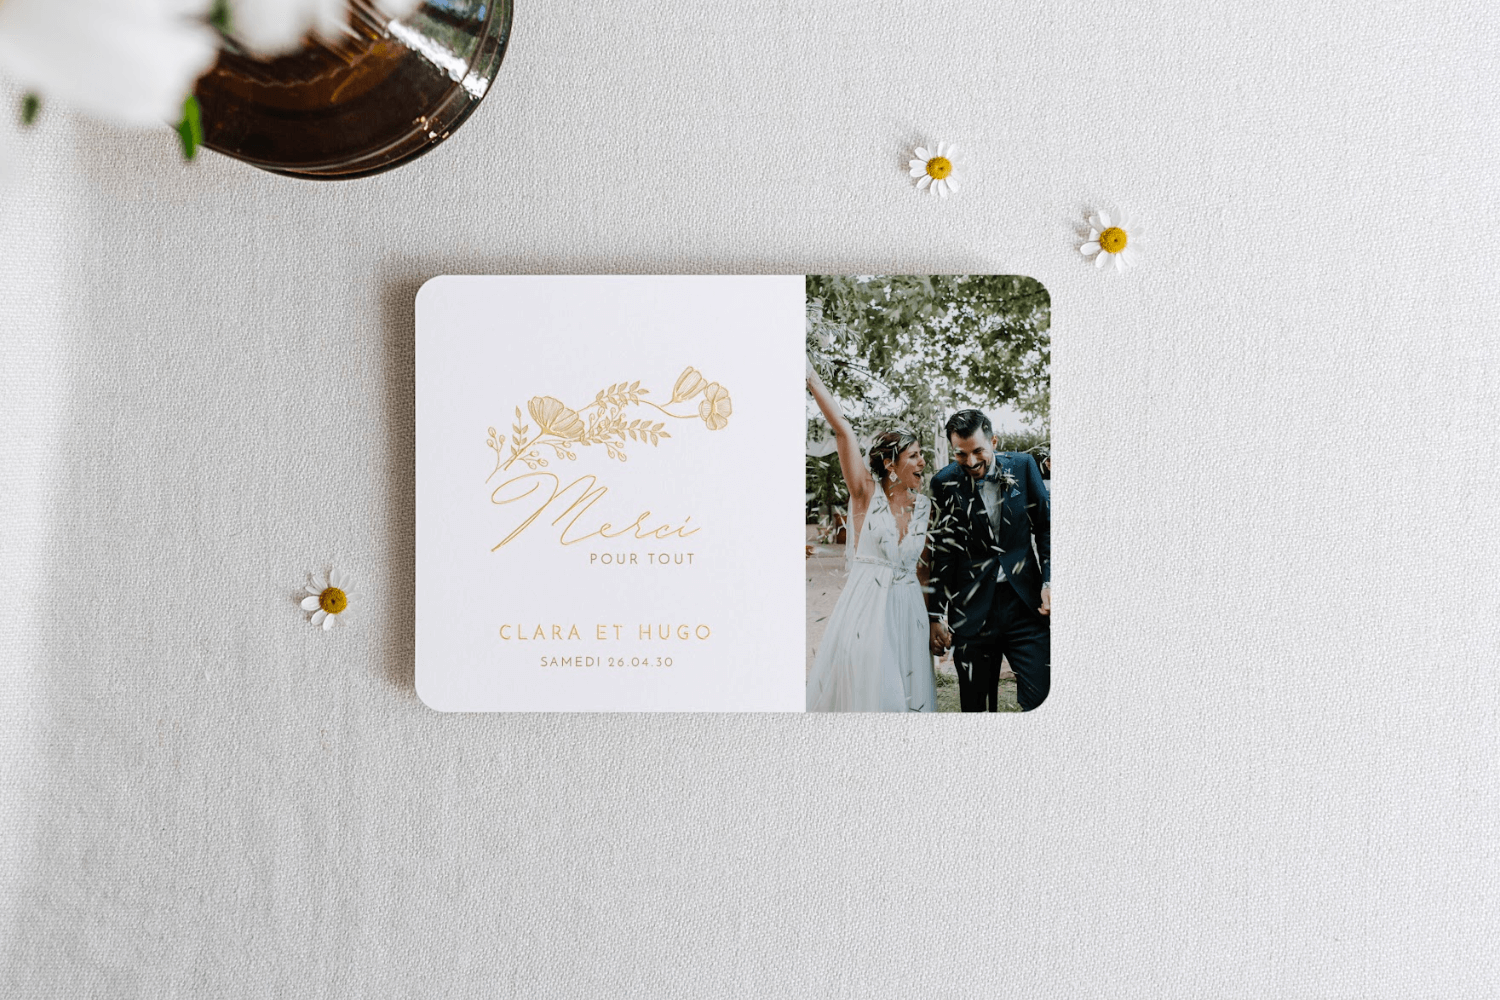 Une carte de remerciements de mariage avec photo de couple, le mot merci et une délicate illustration de fleurs inscrits en doré.